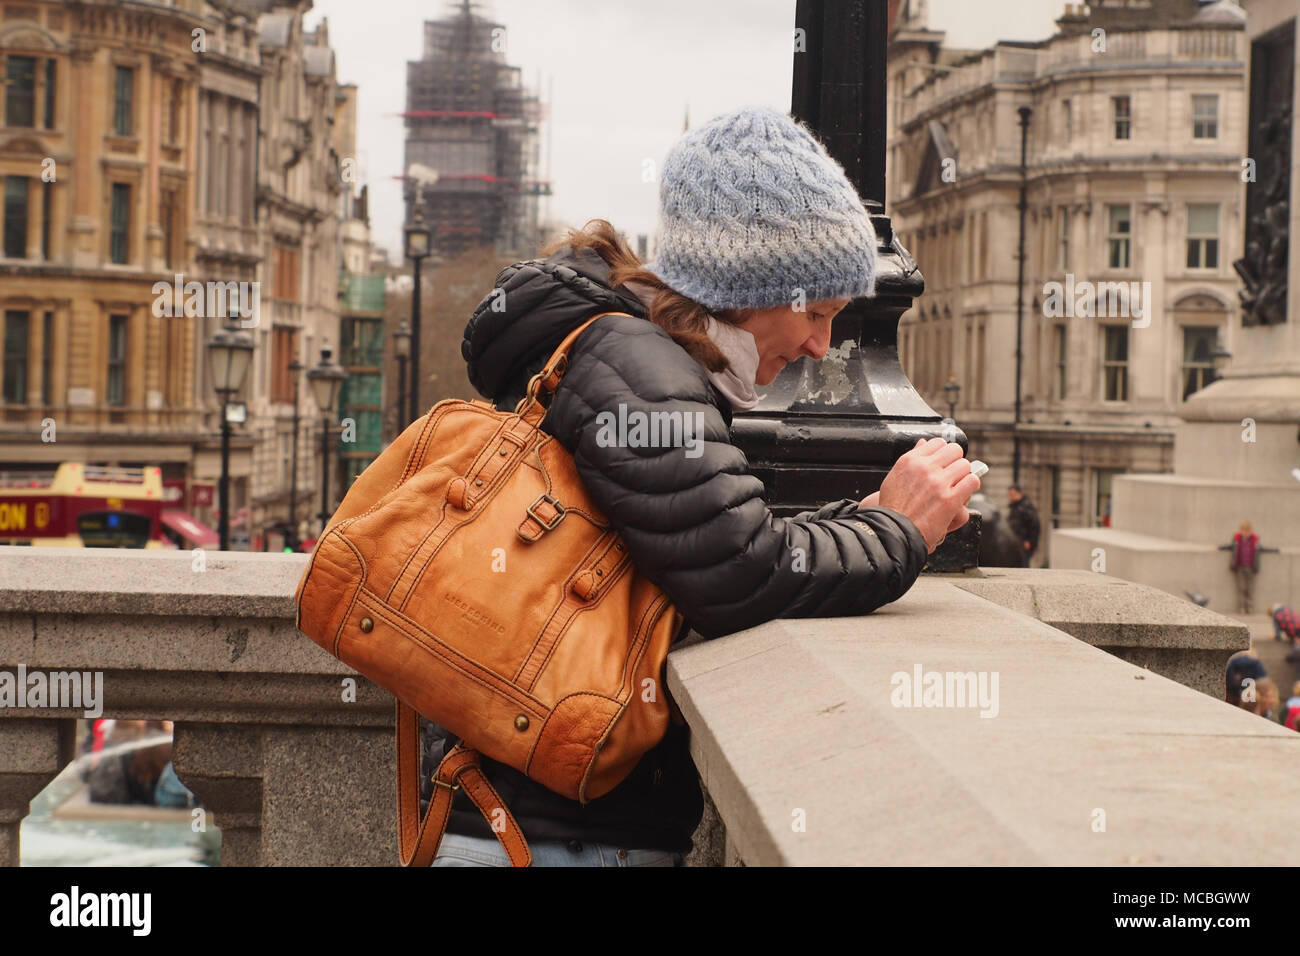 Una mujer vistiendo una capa gruesa, woolly hat y bolsa, apoyándose en una pared, en Trafalgar Square, Londres mirando hacia abajo y concentrarse en su smartphone Foto de stock